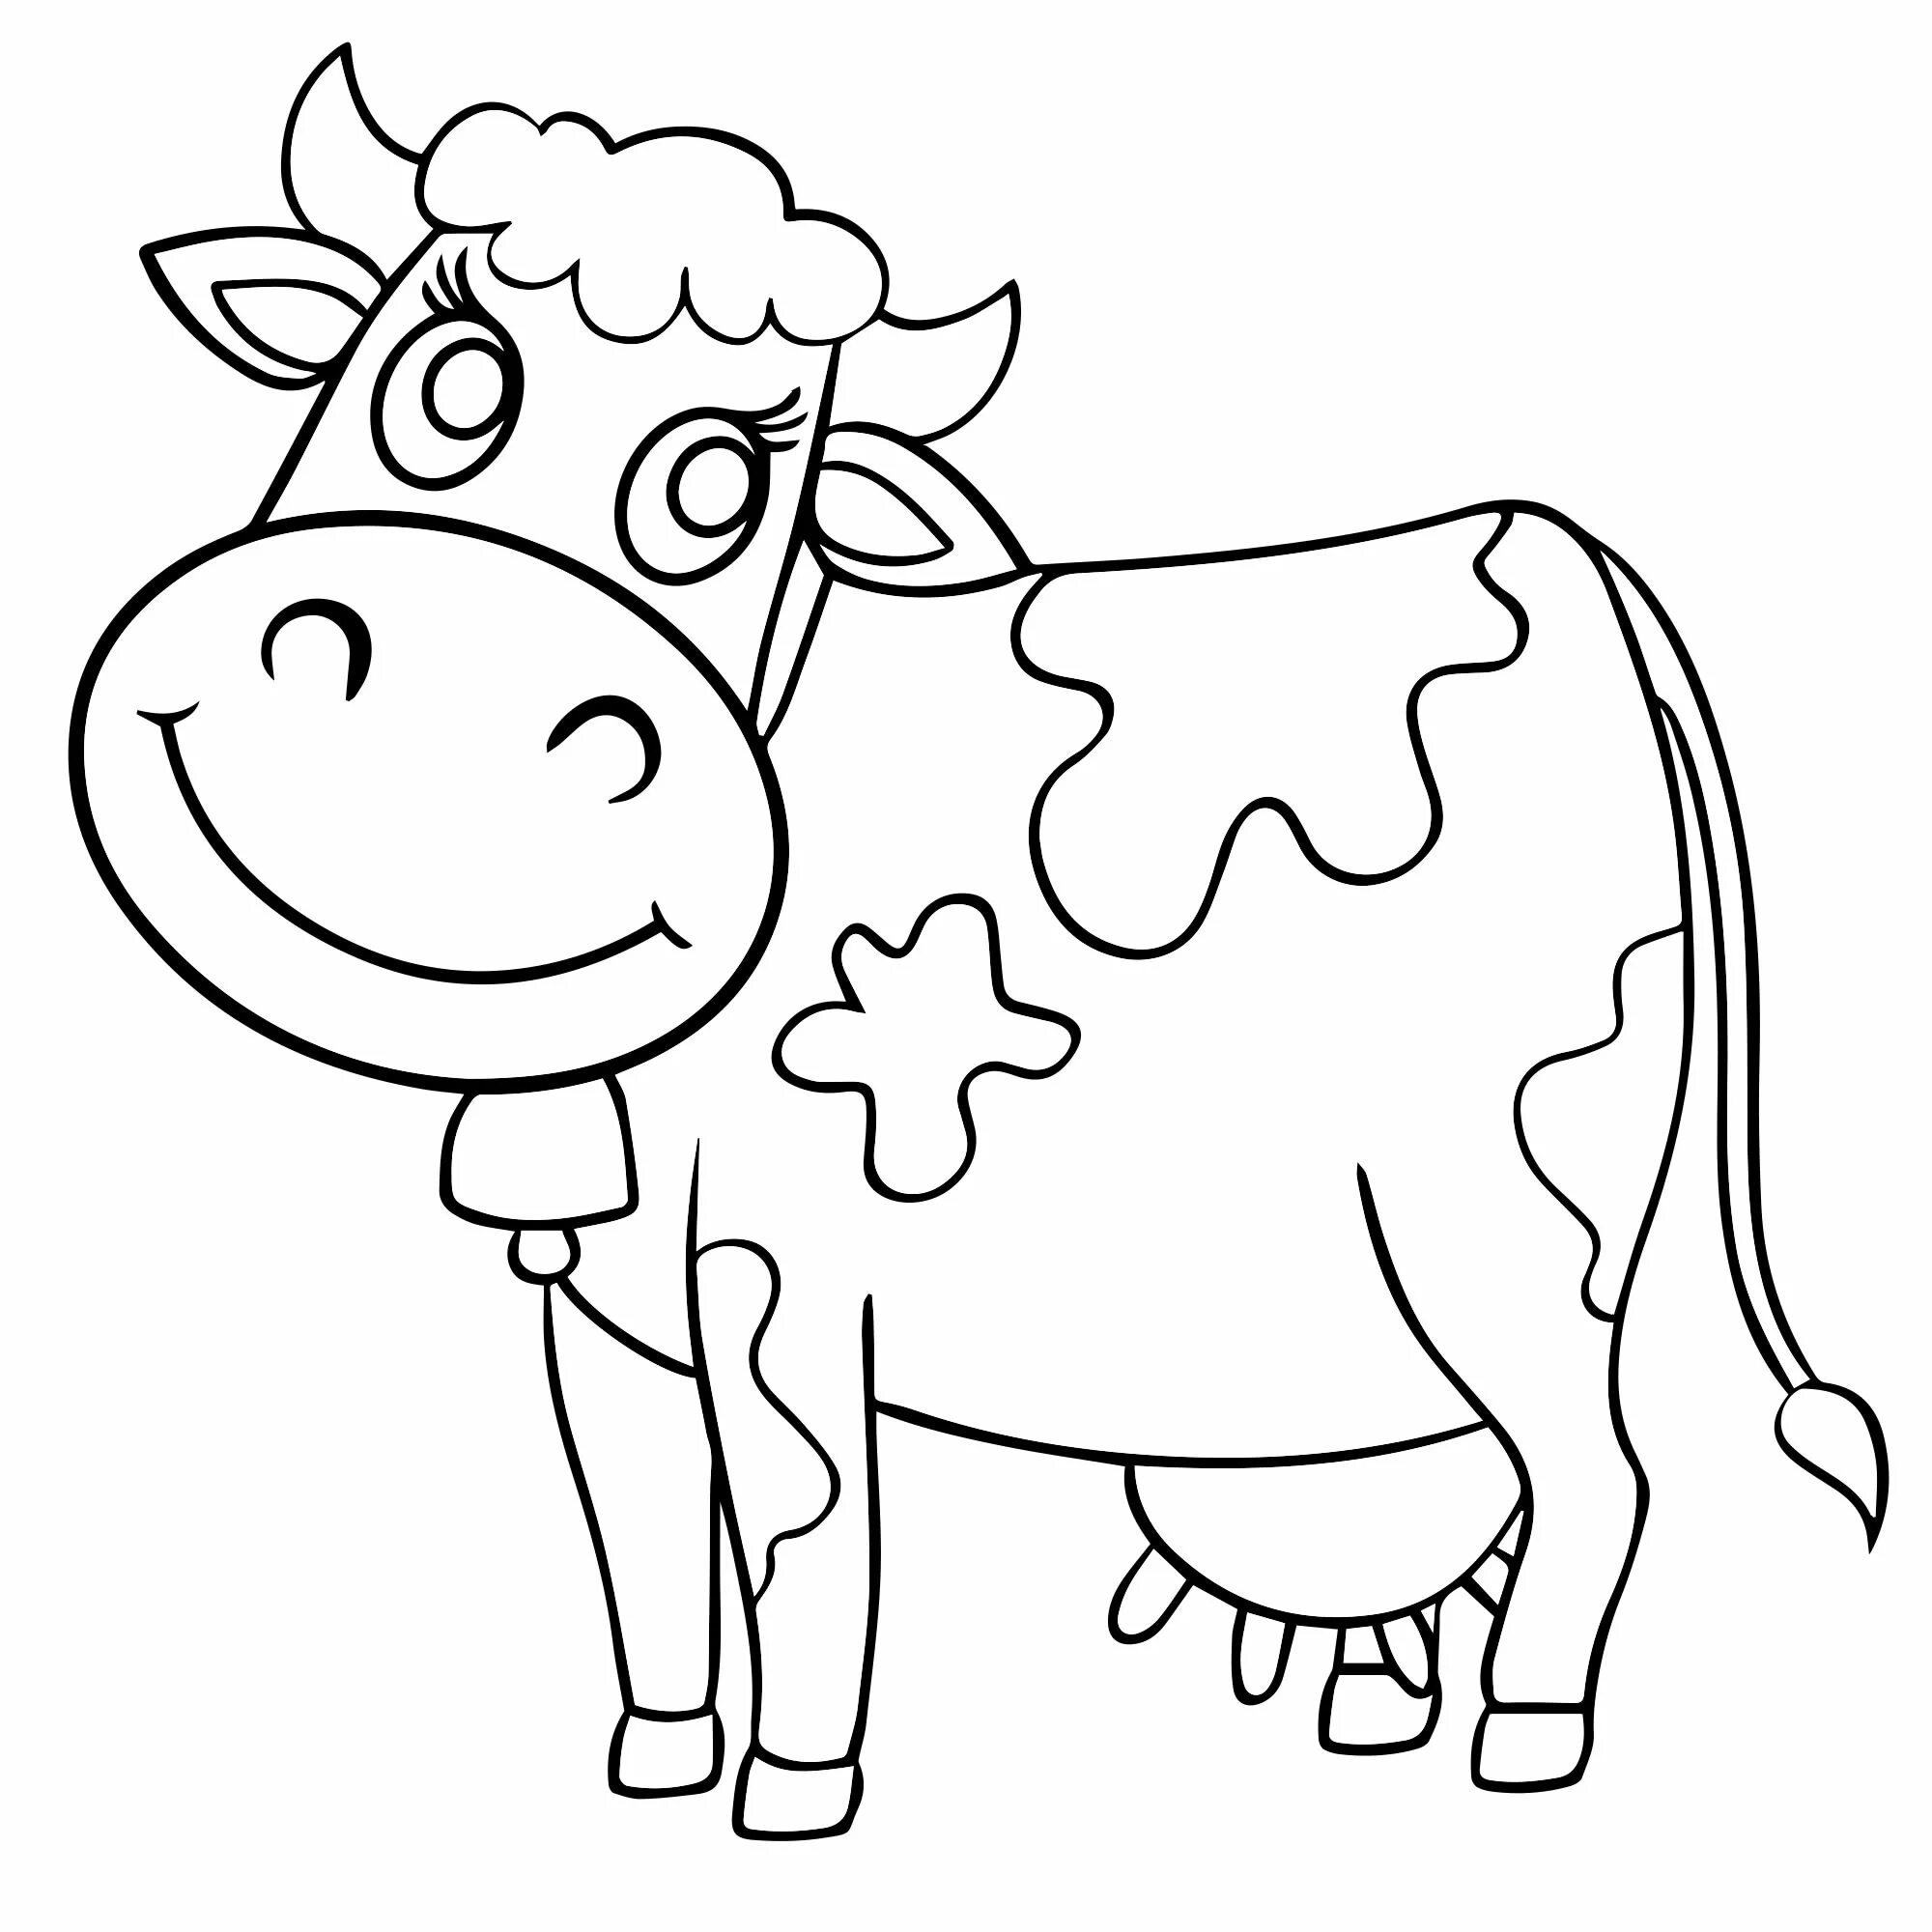 Раскраска корова. Корова раскраска для детей. Корова расскраскадля детей. Корова раскраска для малышей. Распечатать коровку раскраску